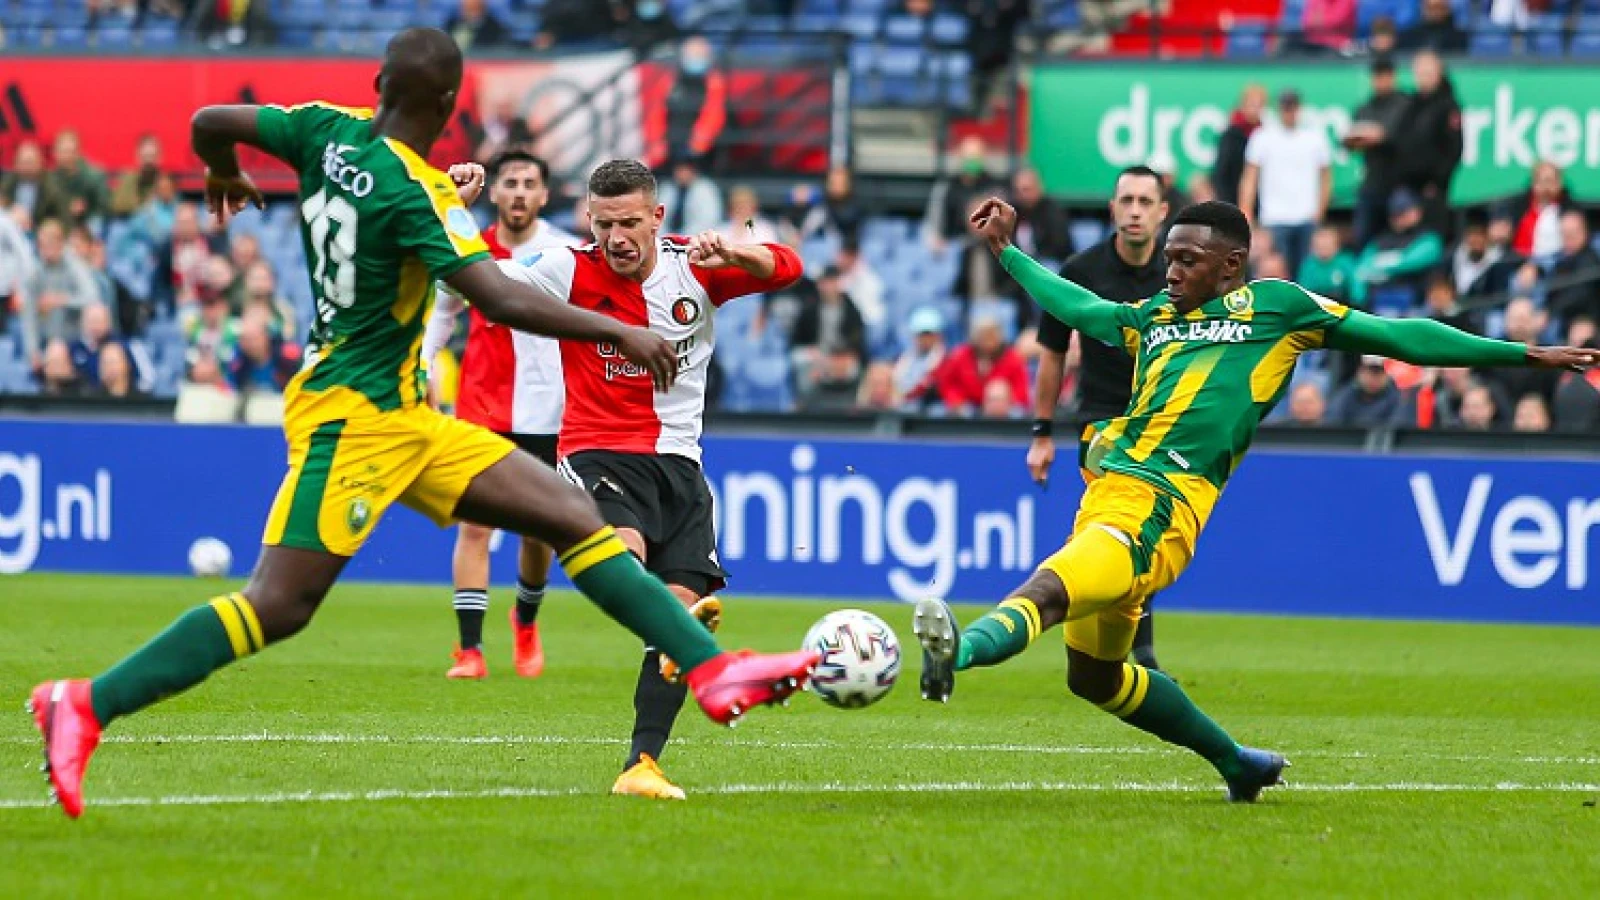 LIVE | Feyenoord - ADO Den Haag 1-1 | De wedstrijd is afgelopen